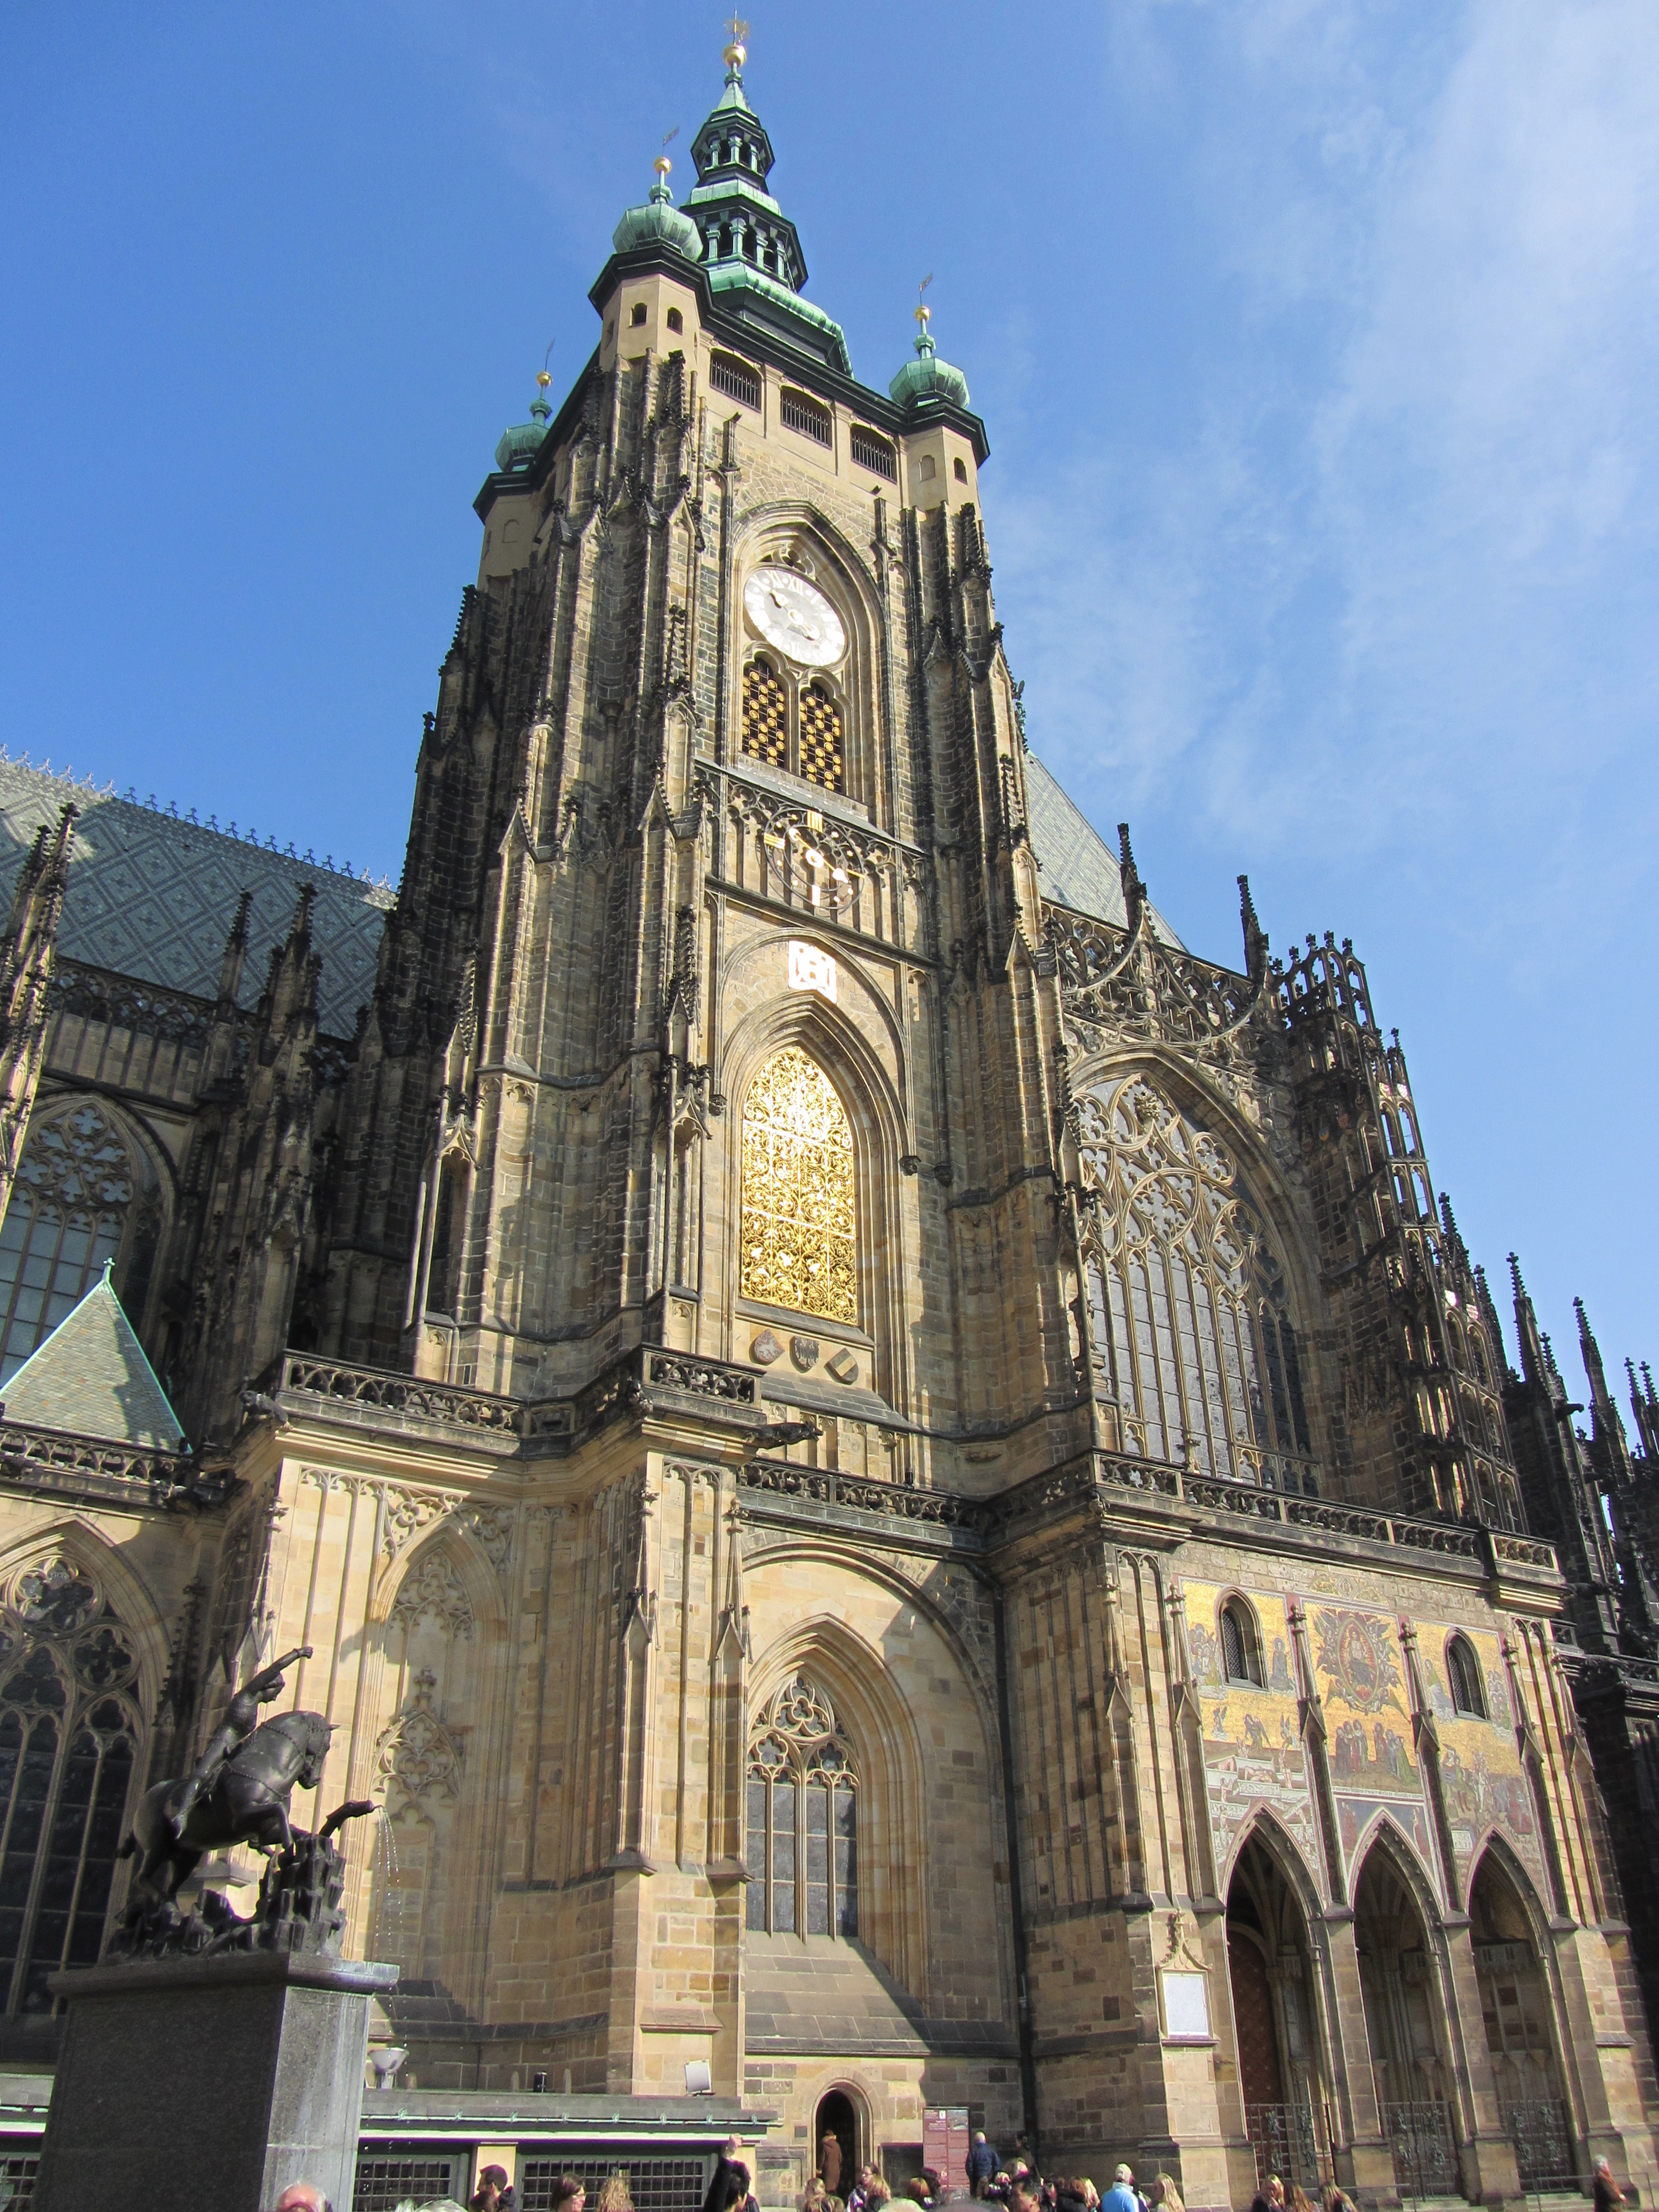 Veitsdom in Prag